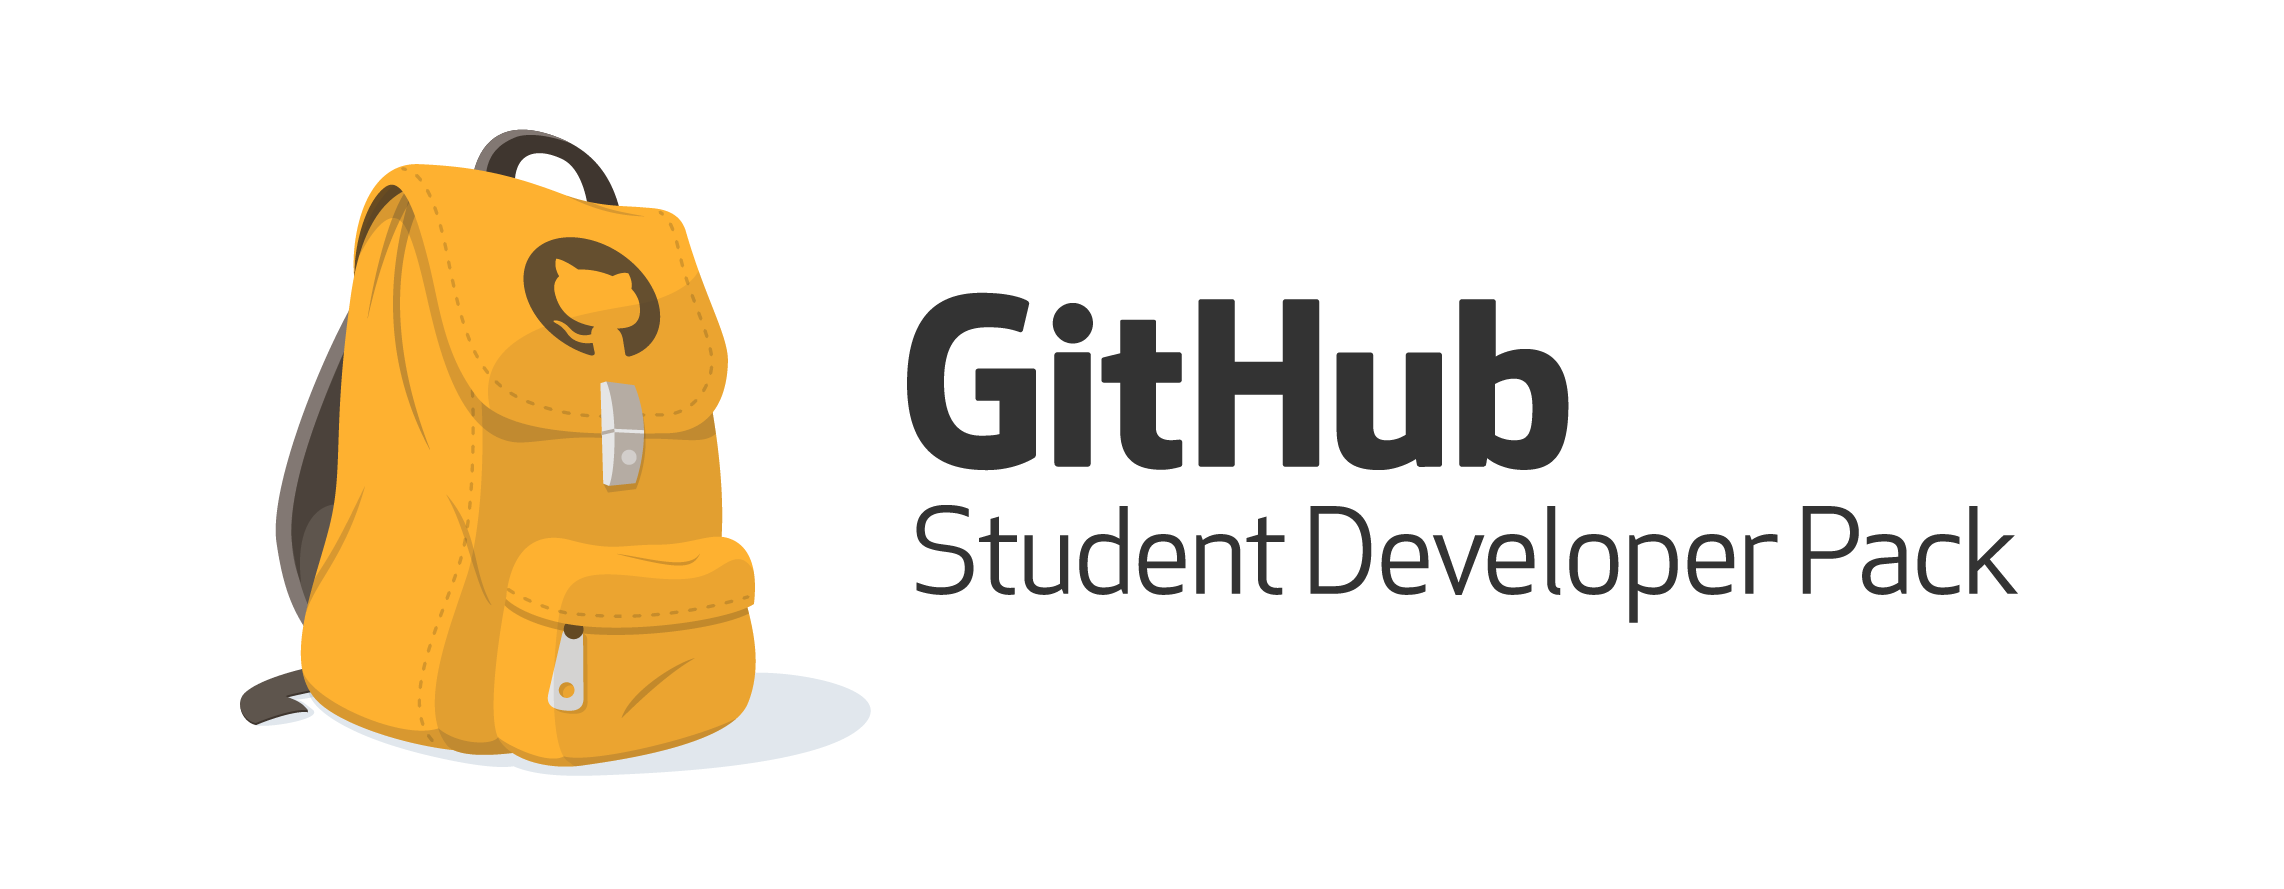 GitHub Student Developer Pack Logo